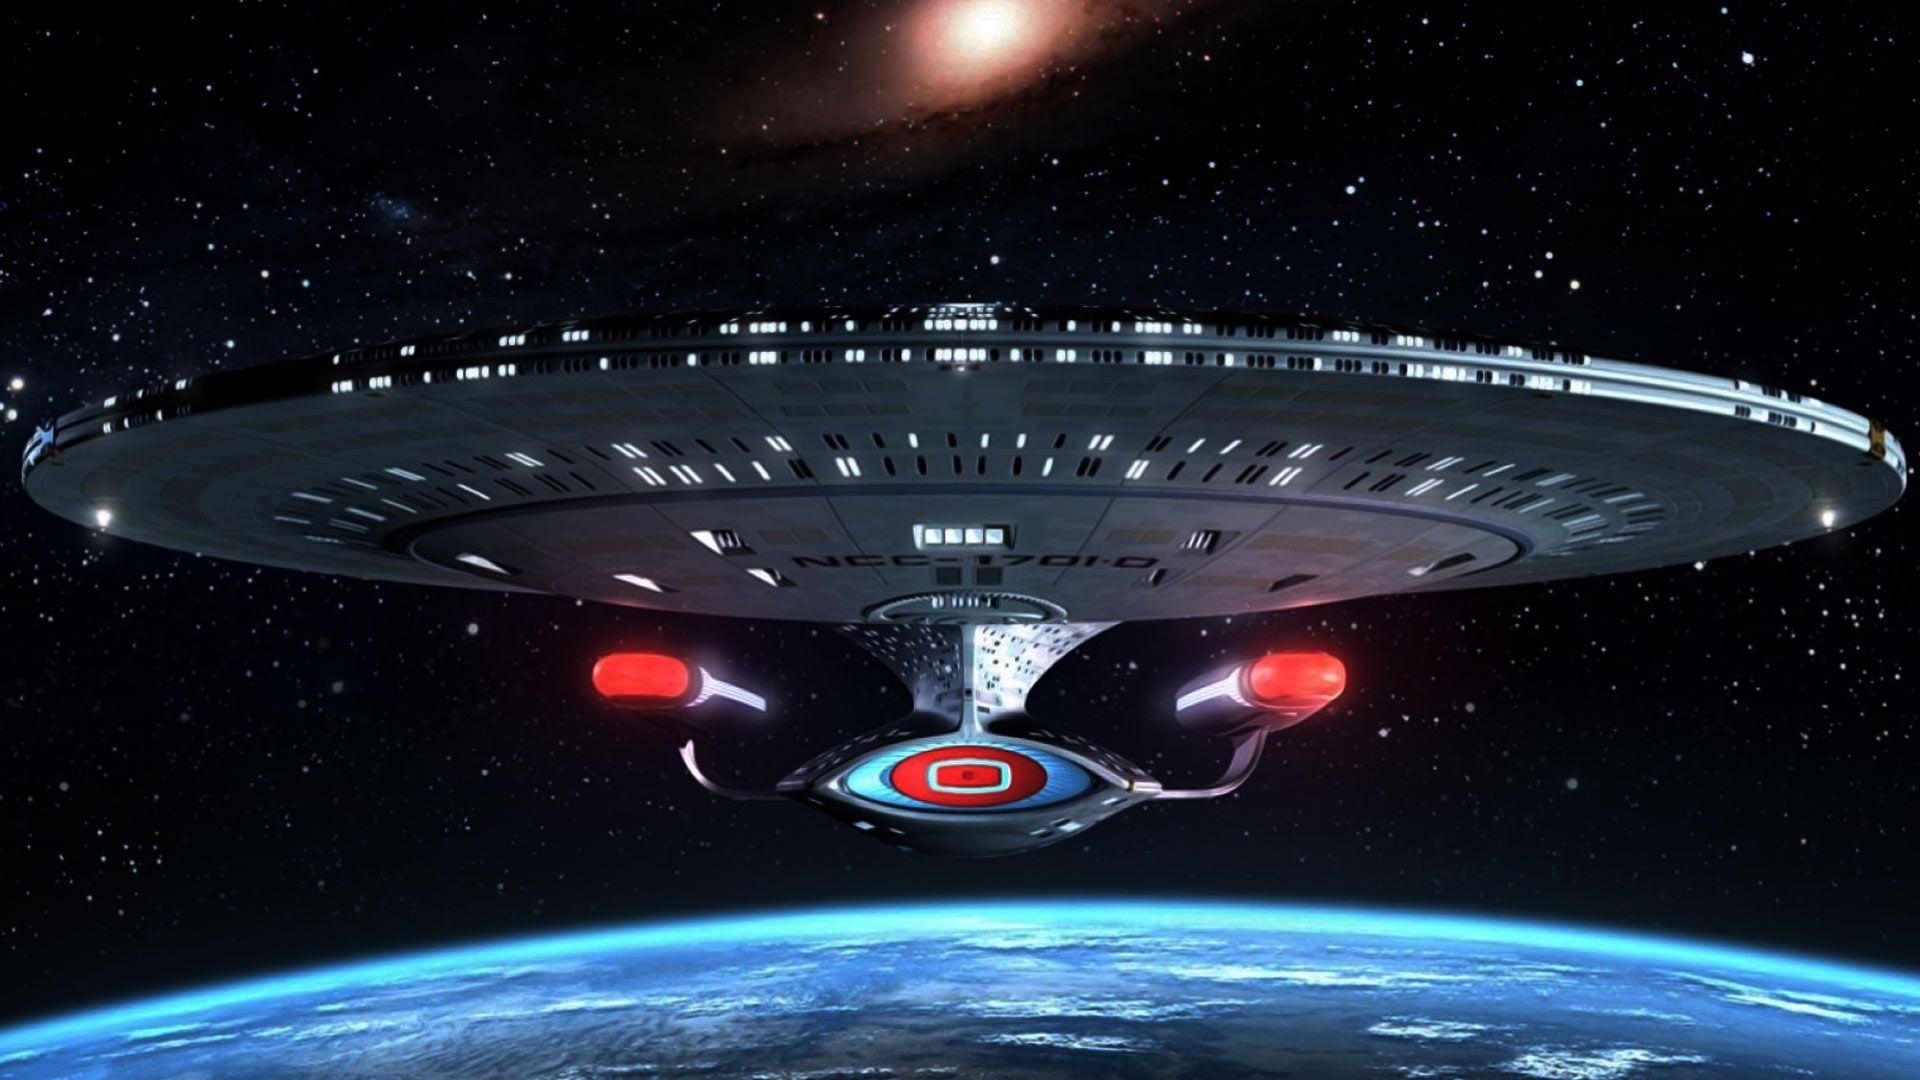 Star Trek: Enterprise Wallpaper 23 X 1080